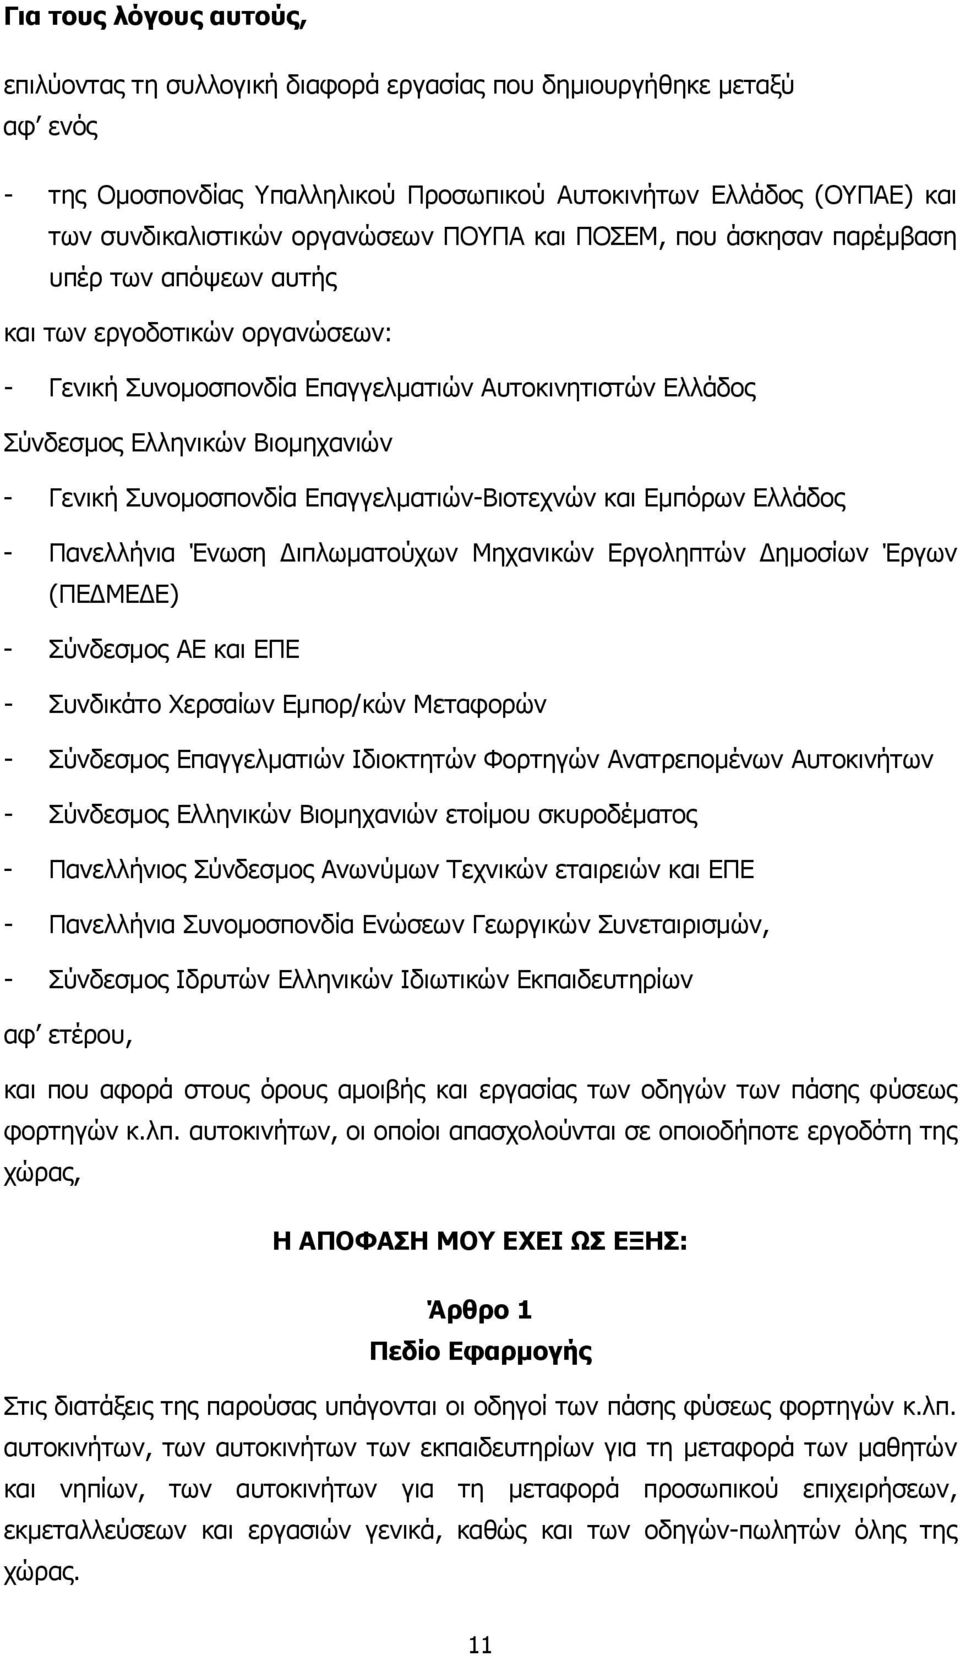 Γενική Συνοµοσπονδία Επαγγελµατιών-Βιοτεχνών και Εµπόρων Ελλάδος - Πανελλήνια Ένωση ιπλωµατούχων Μηχανικών Εργοληπτών ηµοσίων Έργων (ΠΕ ΜΕ Ε) - Σύνδεσµος ΑΕ και ΕΠΕ - Συνδικάτο Χερσαίων Εµπορ/κών